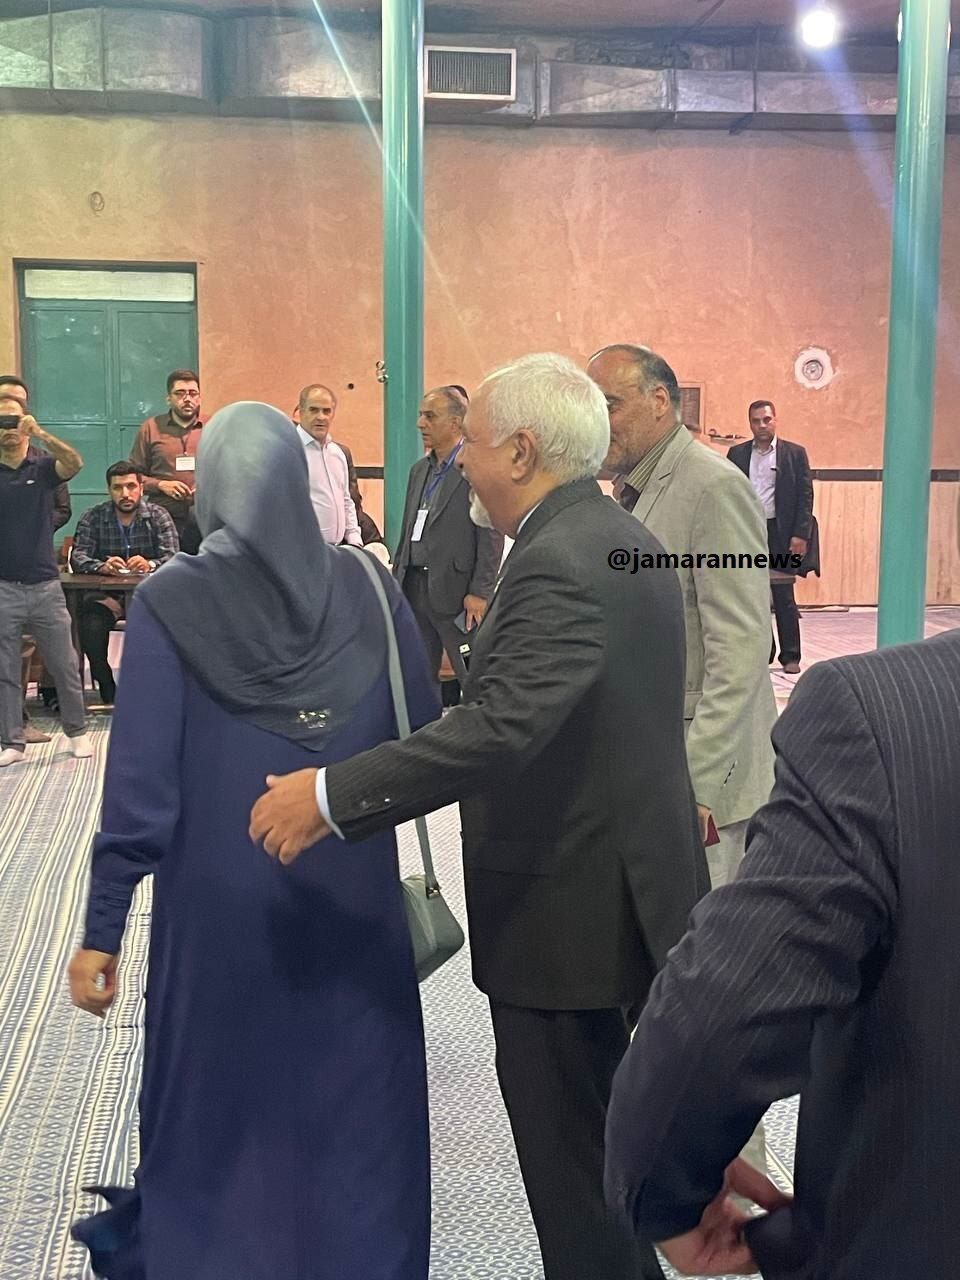 تصویر تیپ و پوشش همسر ظریف در هنگام شرکت در انتخابات ریاست جمهوری | دست ظرف در پشت همسرش!